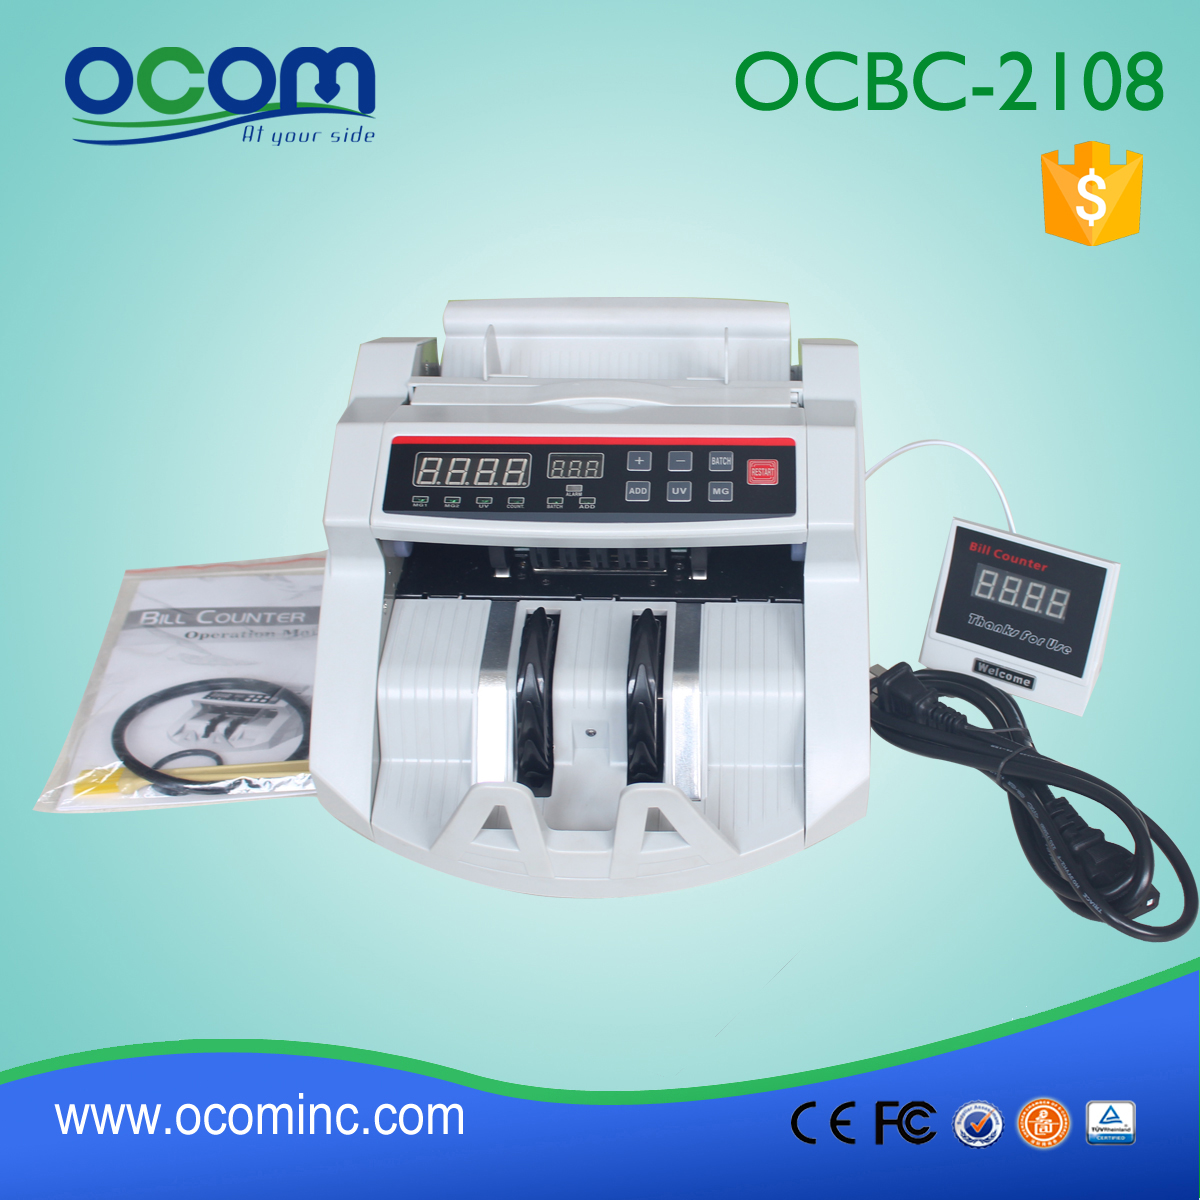 OCBC-2108 Licznik tanie pieniądze w Chinach